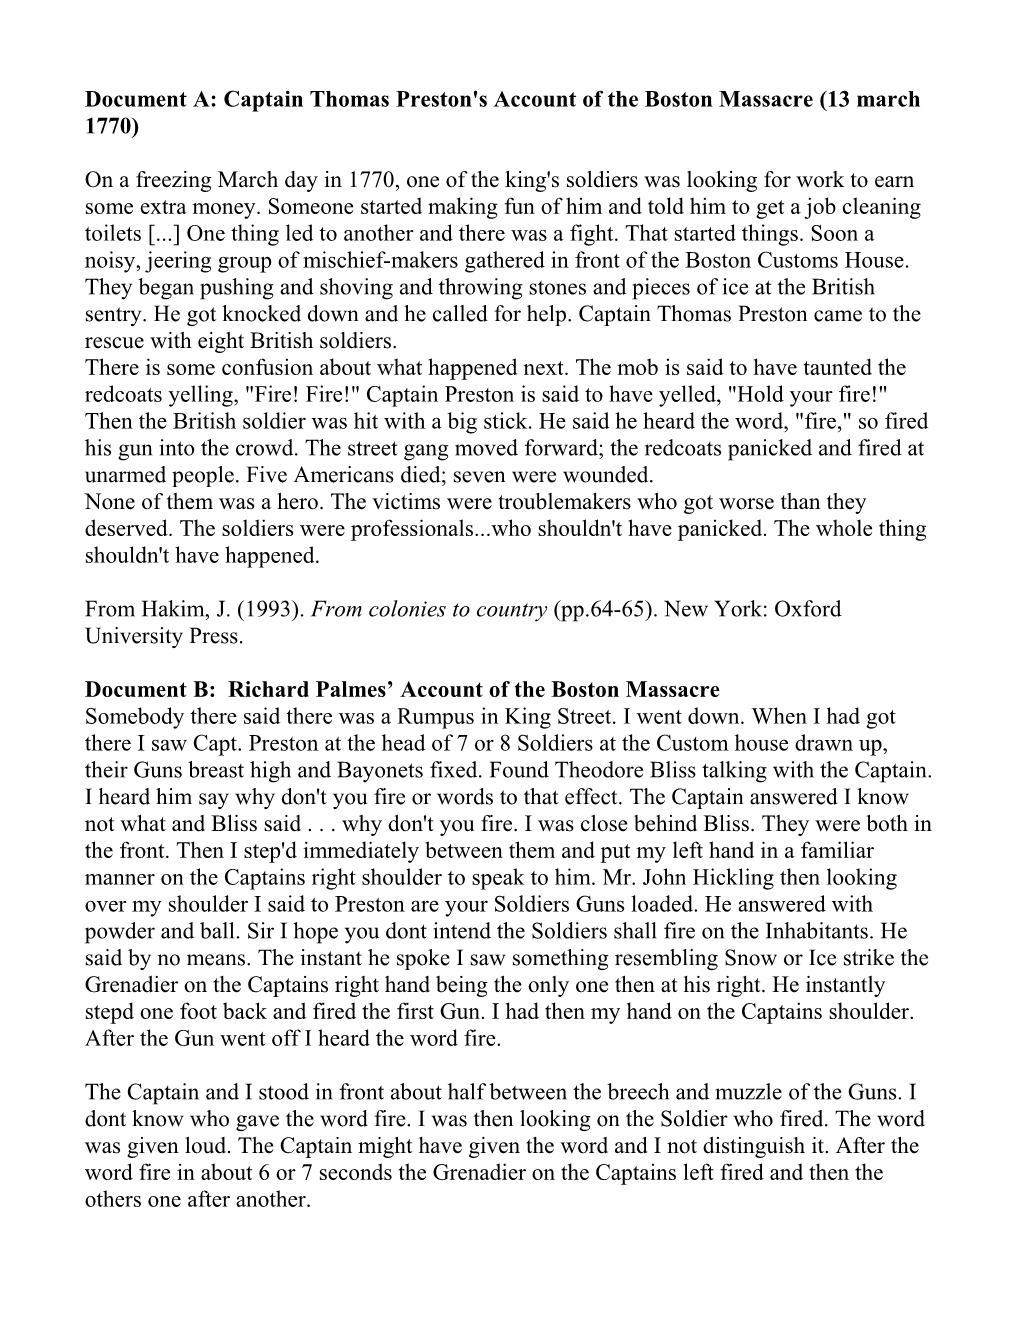 Document A: Captain Thomas Preston's Account of the Boston Massacre (13 March 1770)